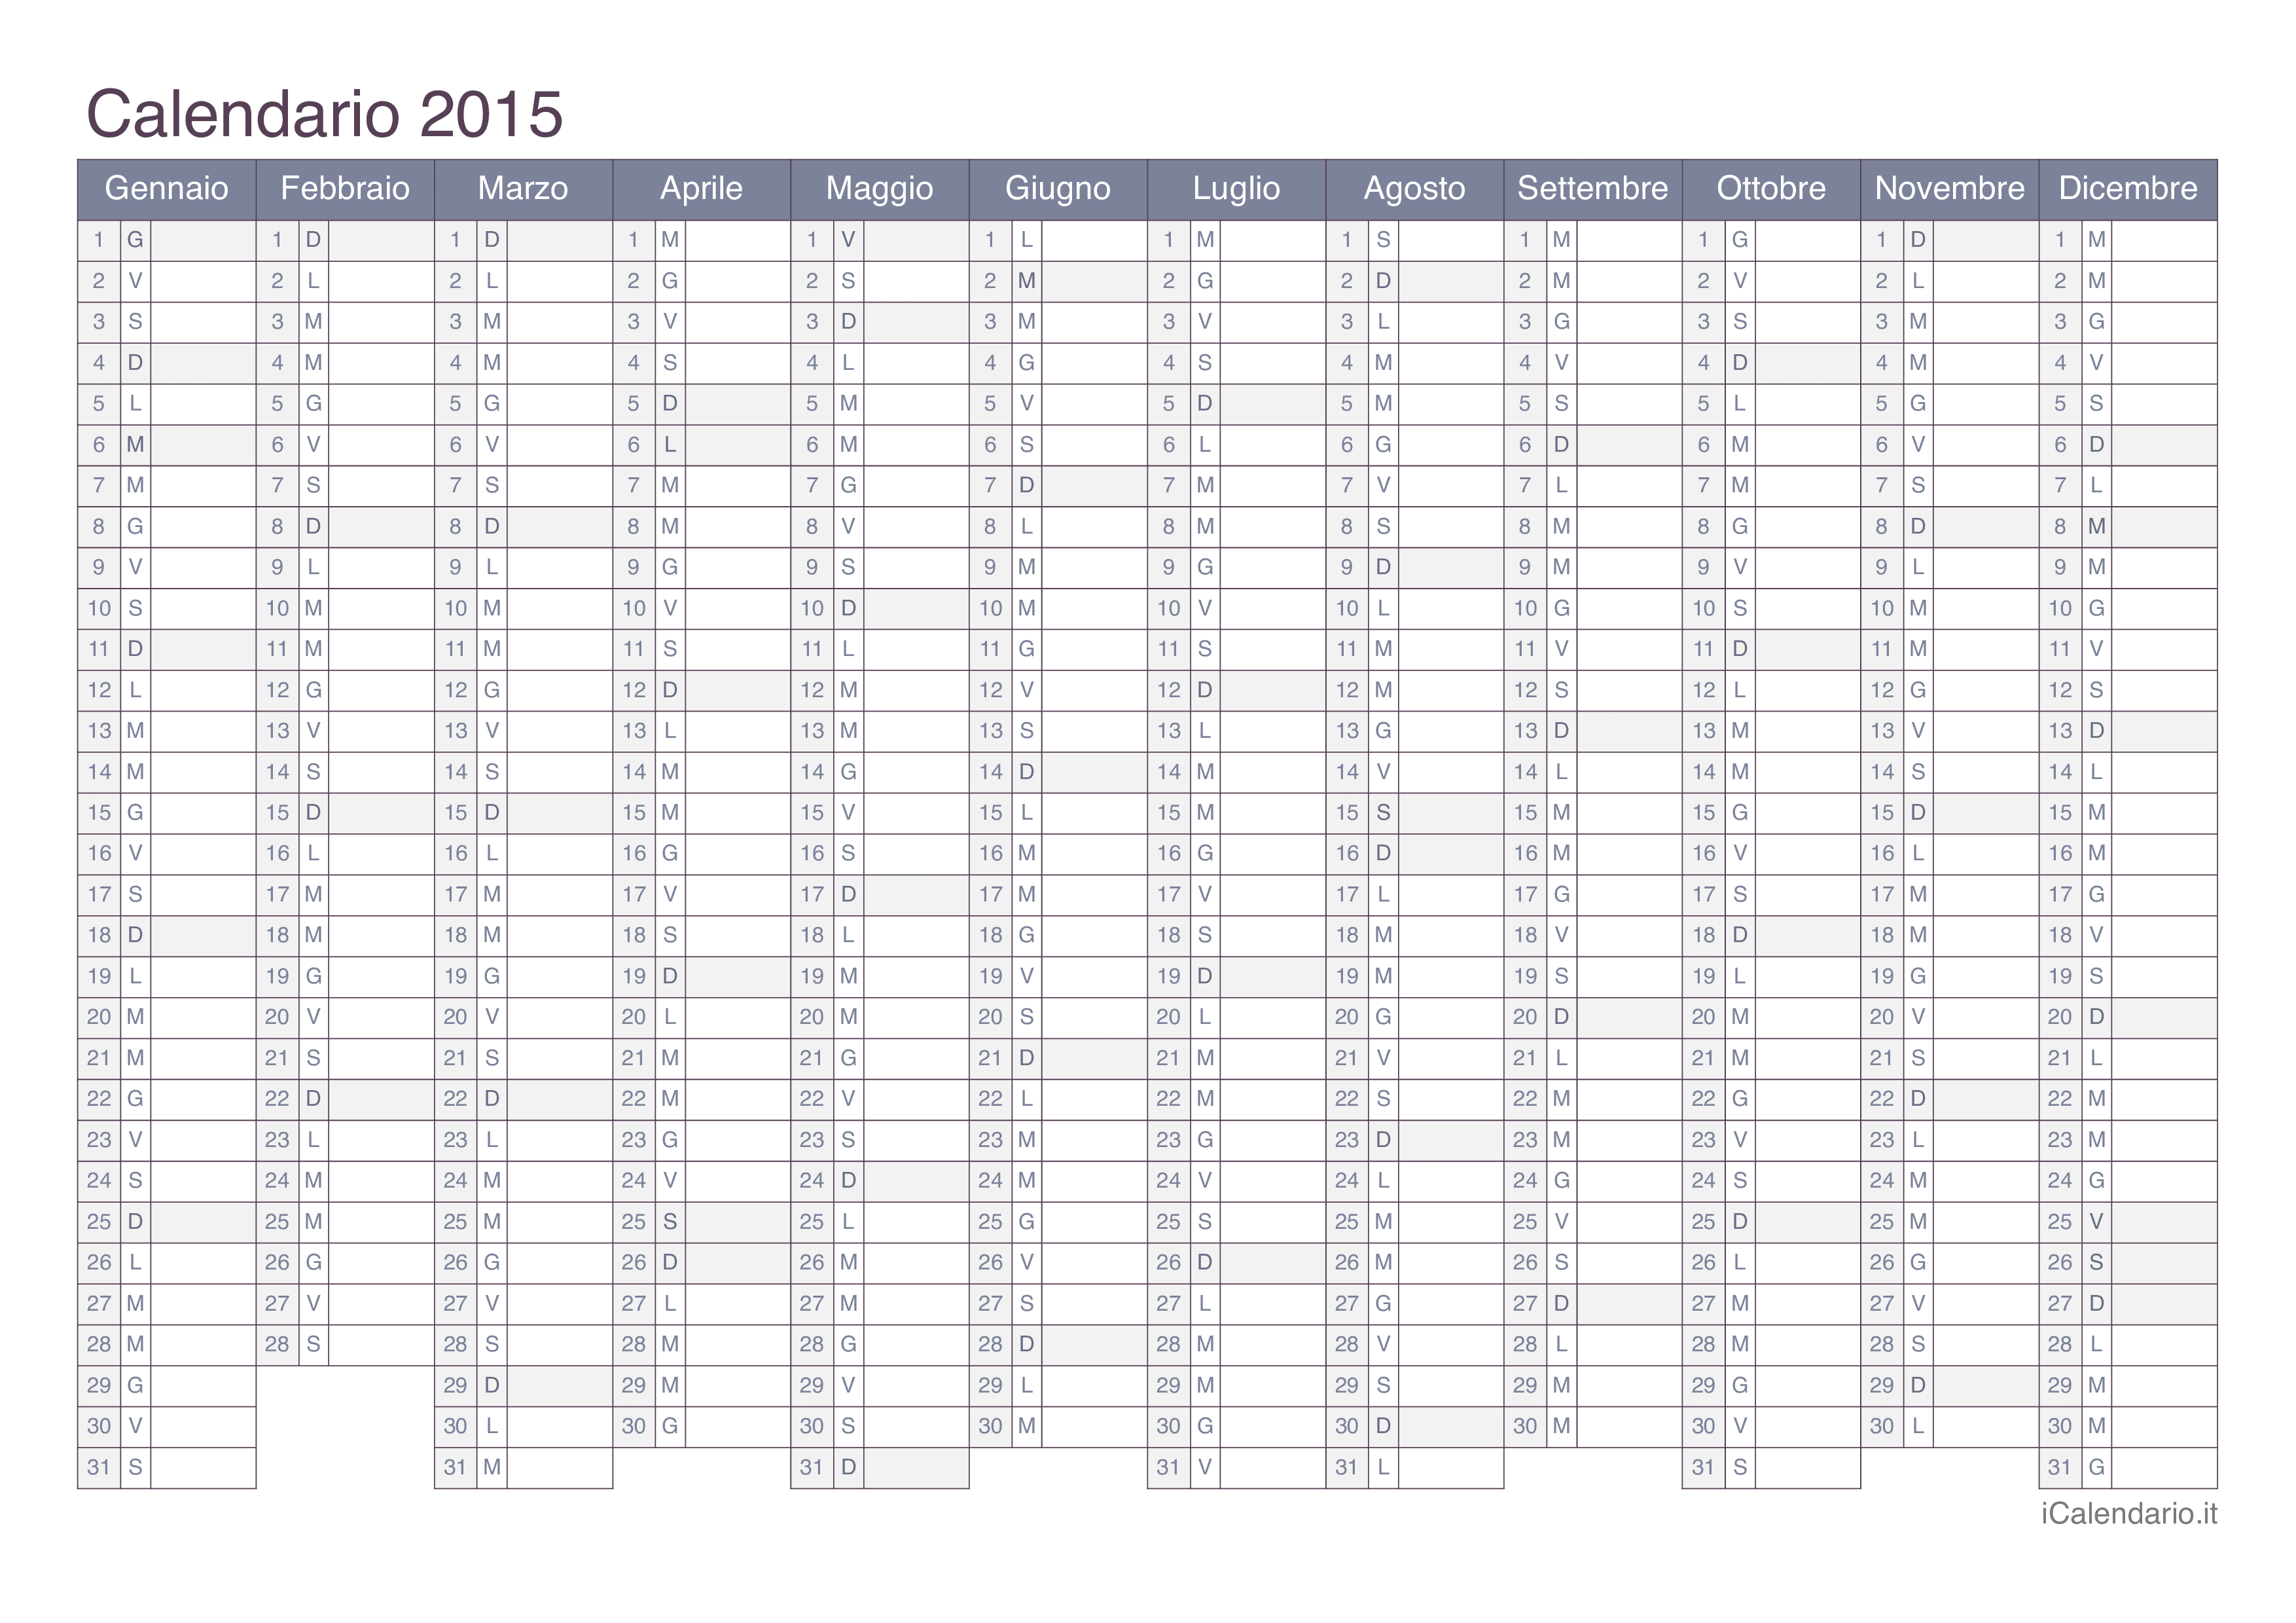 Calendario 2015 - Office